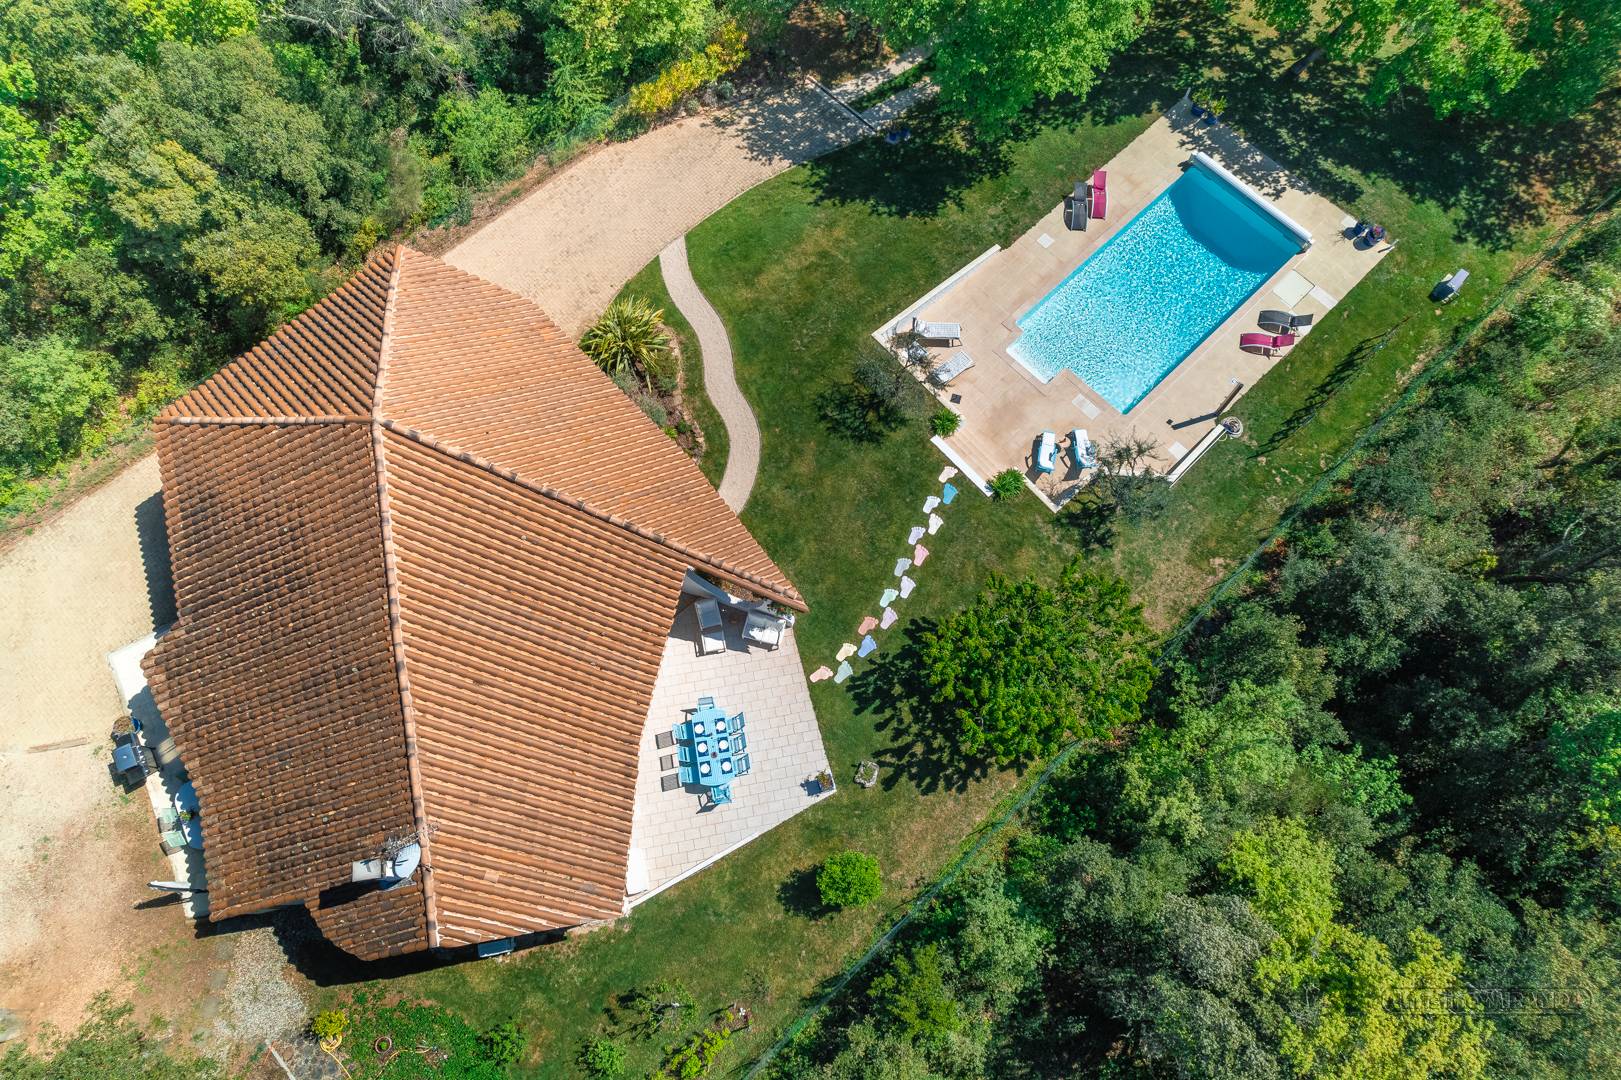 Location vacances en Drôme avec piscine chaufée, jardin clos